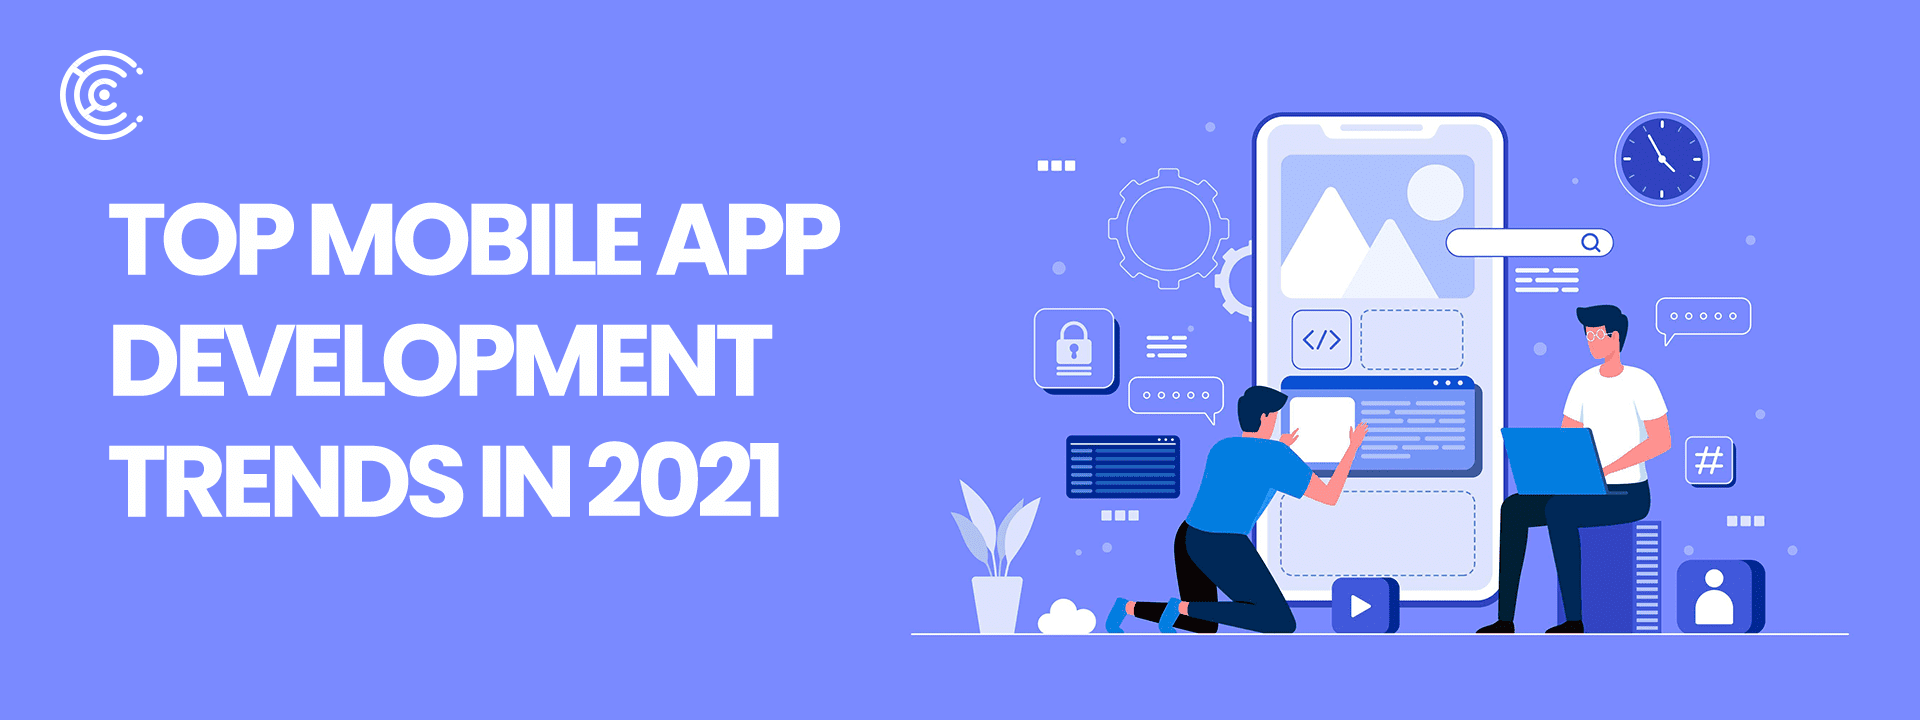 Top Mobile App Development Trends in 2021